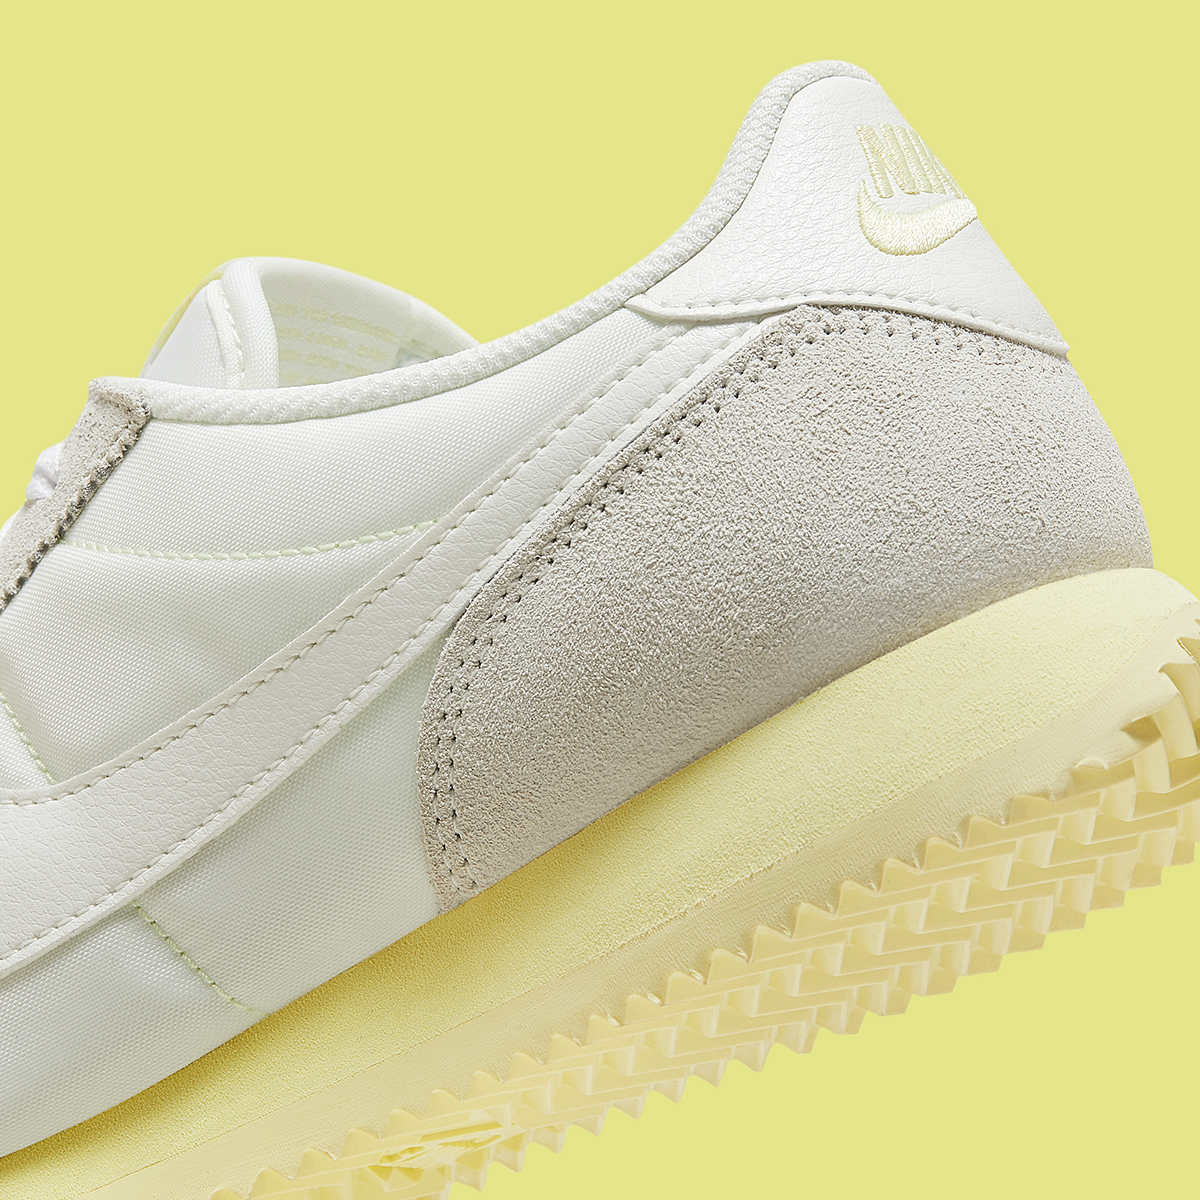 Nike clous Cortez White Pale Yellow Hf6410 118 1